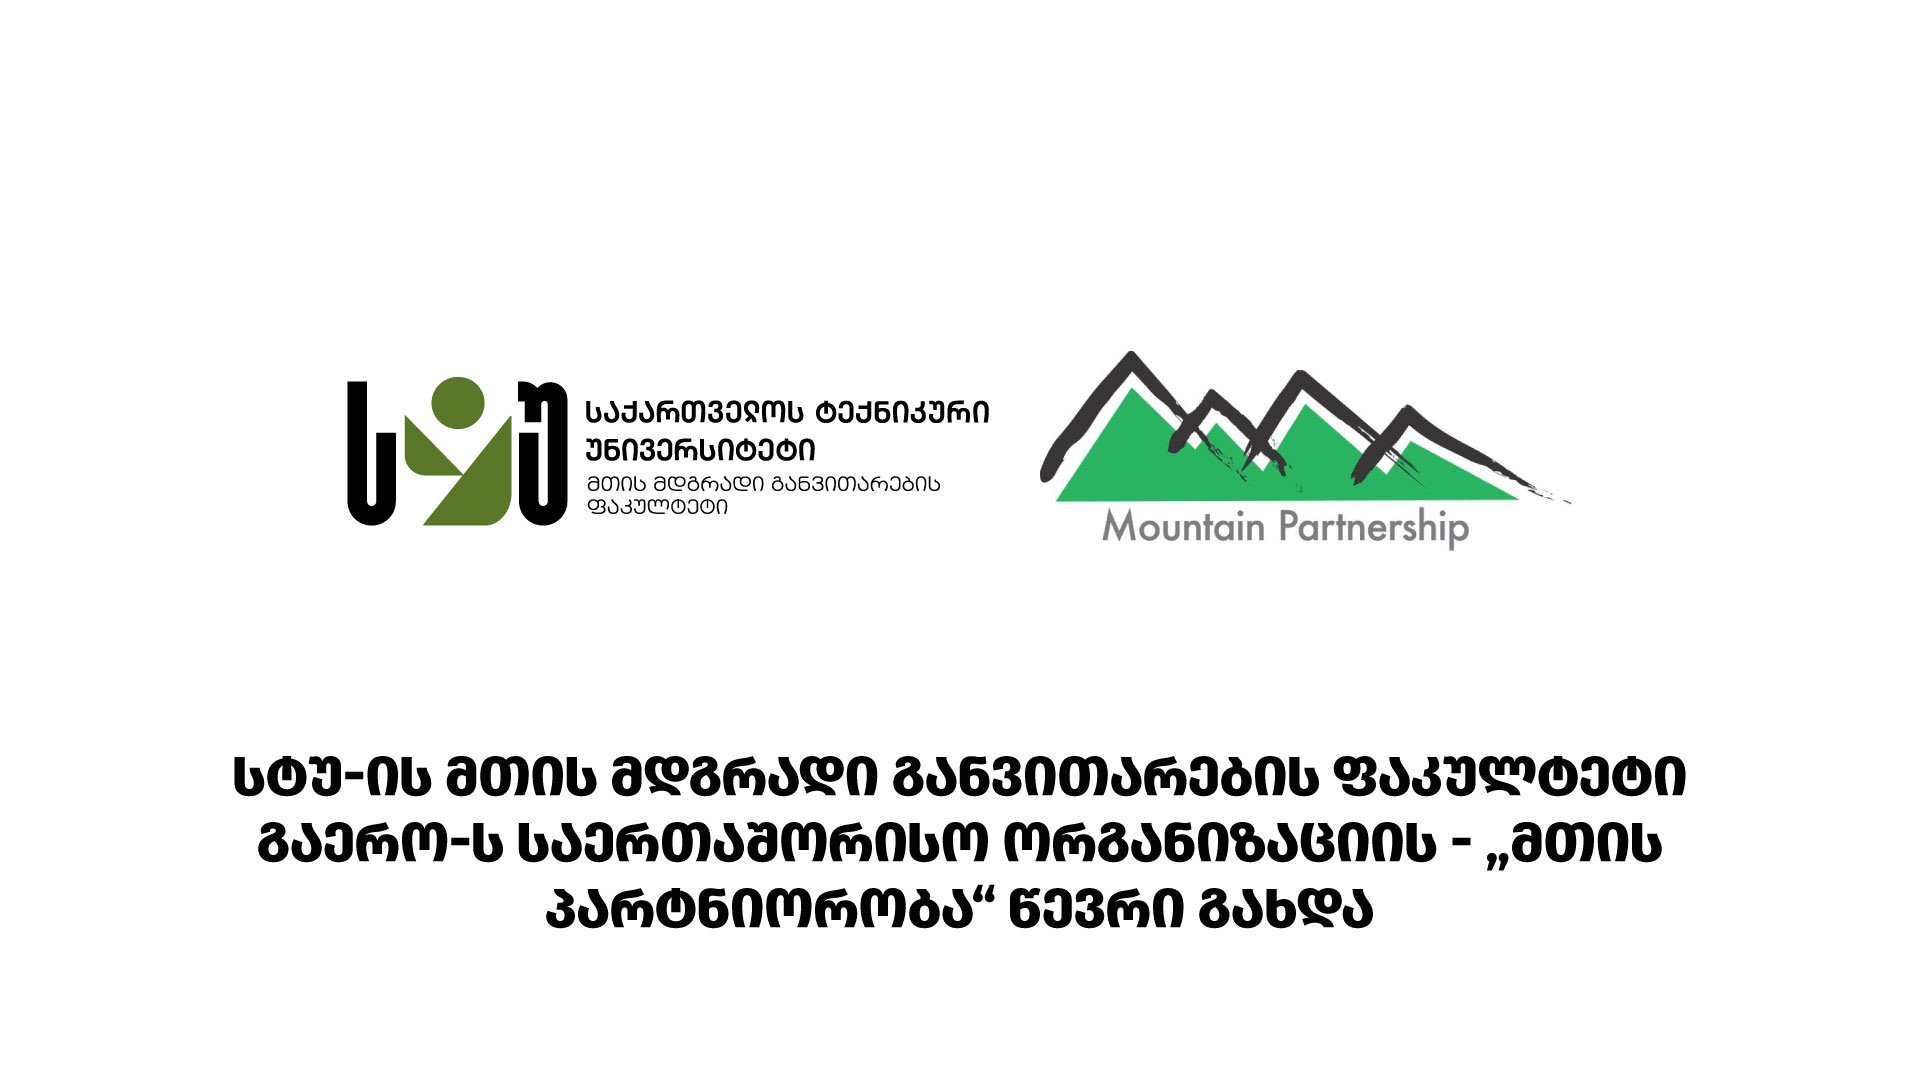 სტუ - ის მთის მდგრადი განვითარების ფაკულტეტი გაეროს საერთაშორისო ორგანიზაციის - "მთის პარტნიორობა" წევრი გახდა